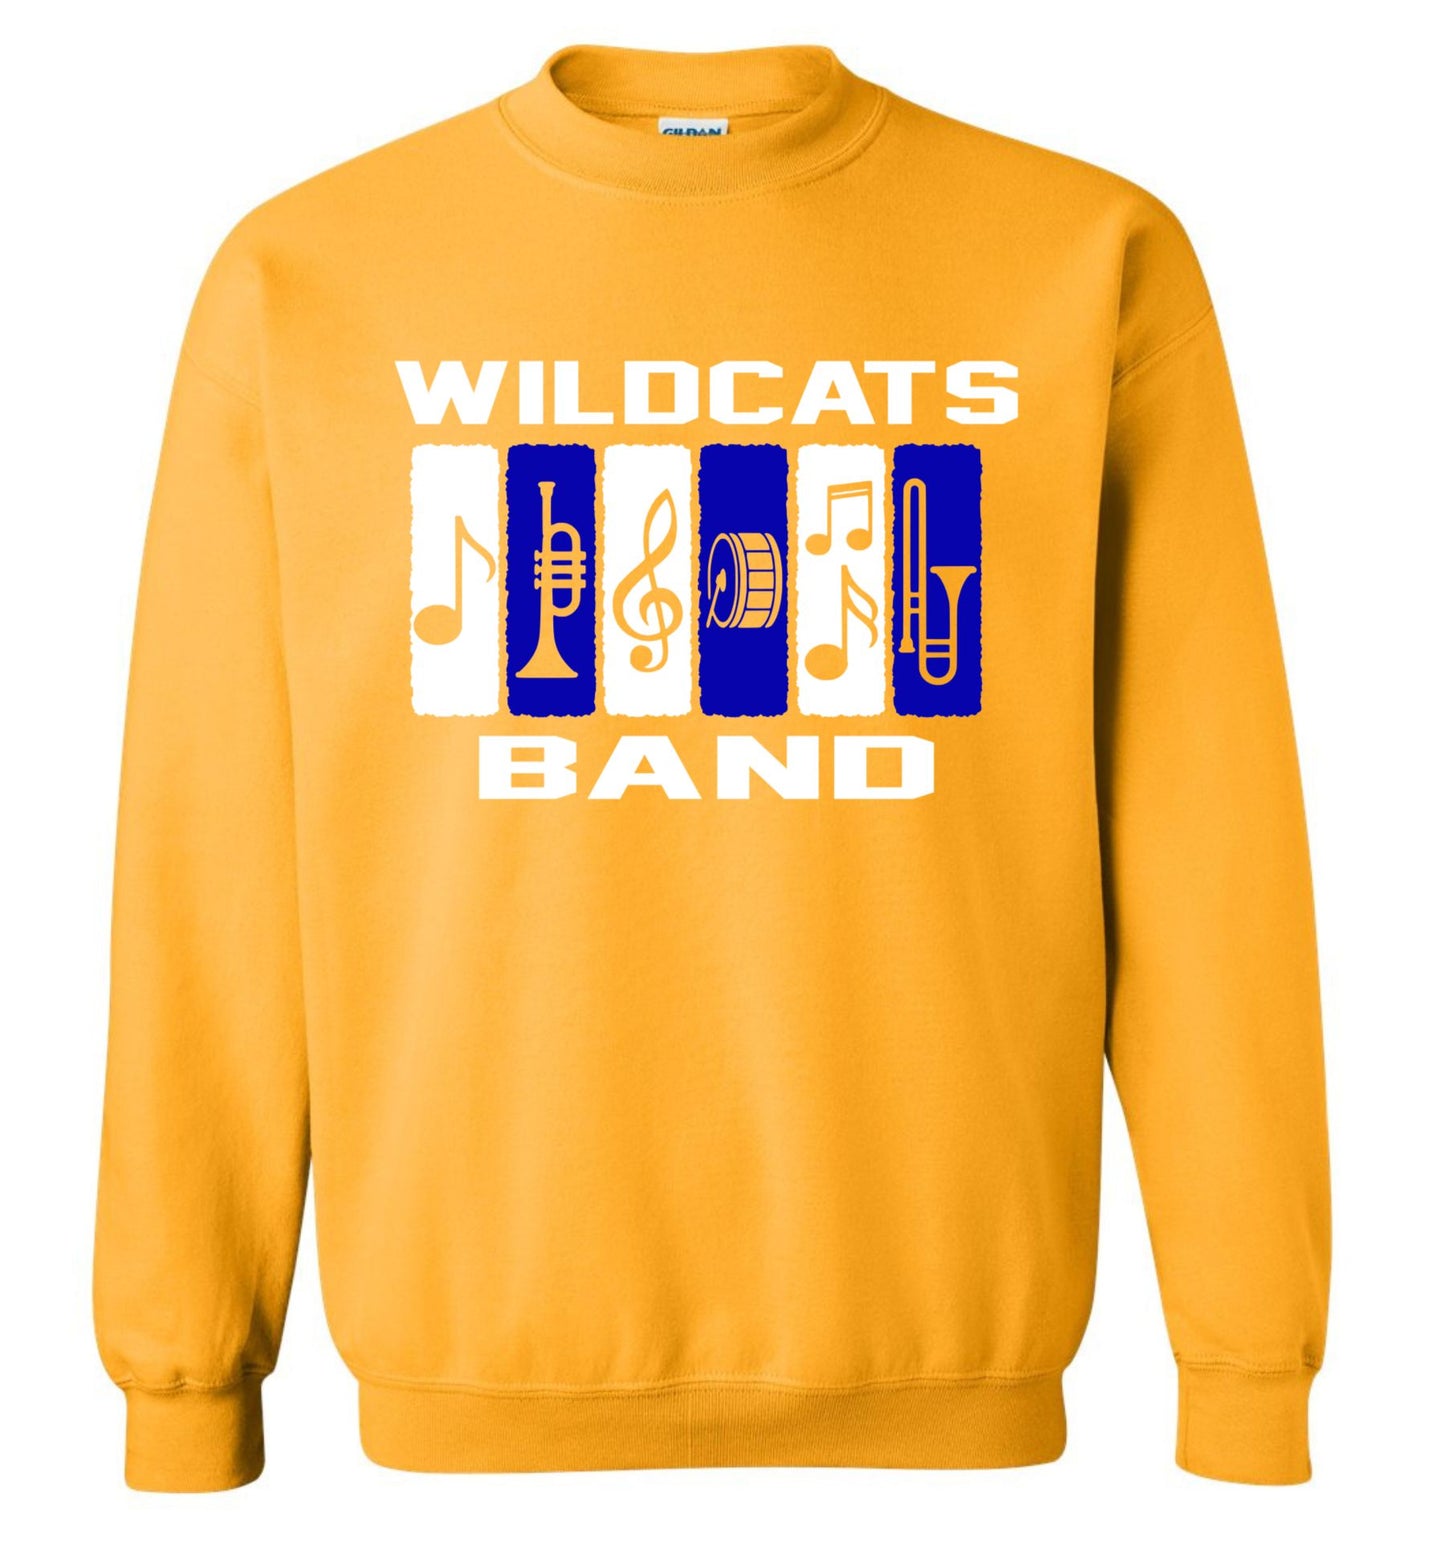 Galva Wildcats - Band Crew Sweatshirt